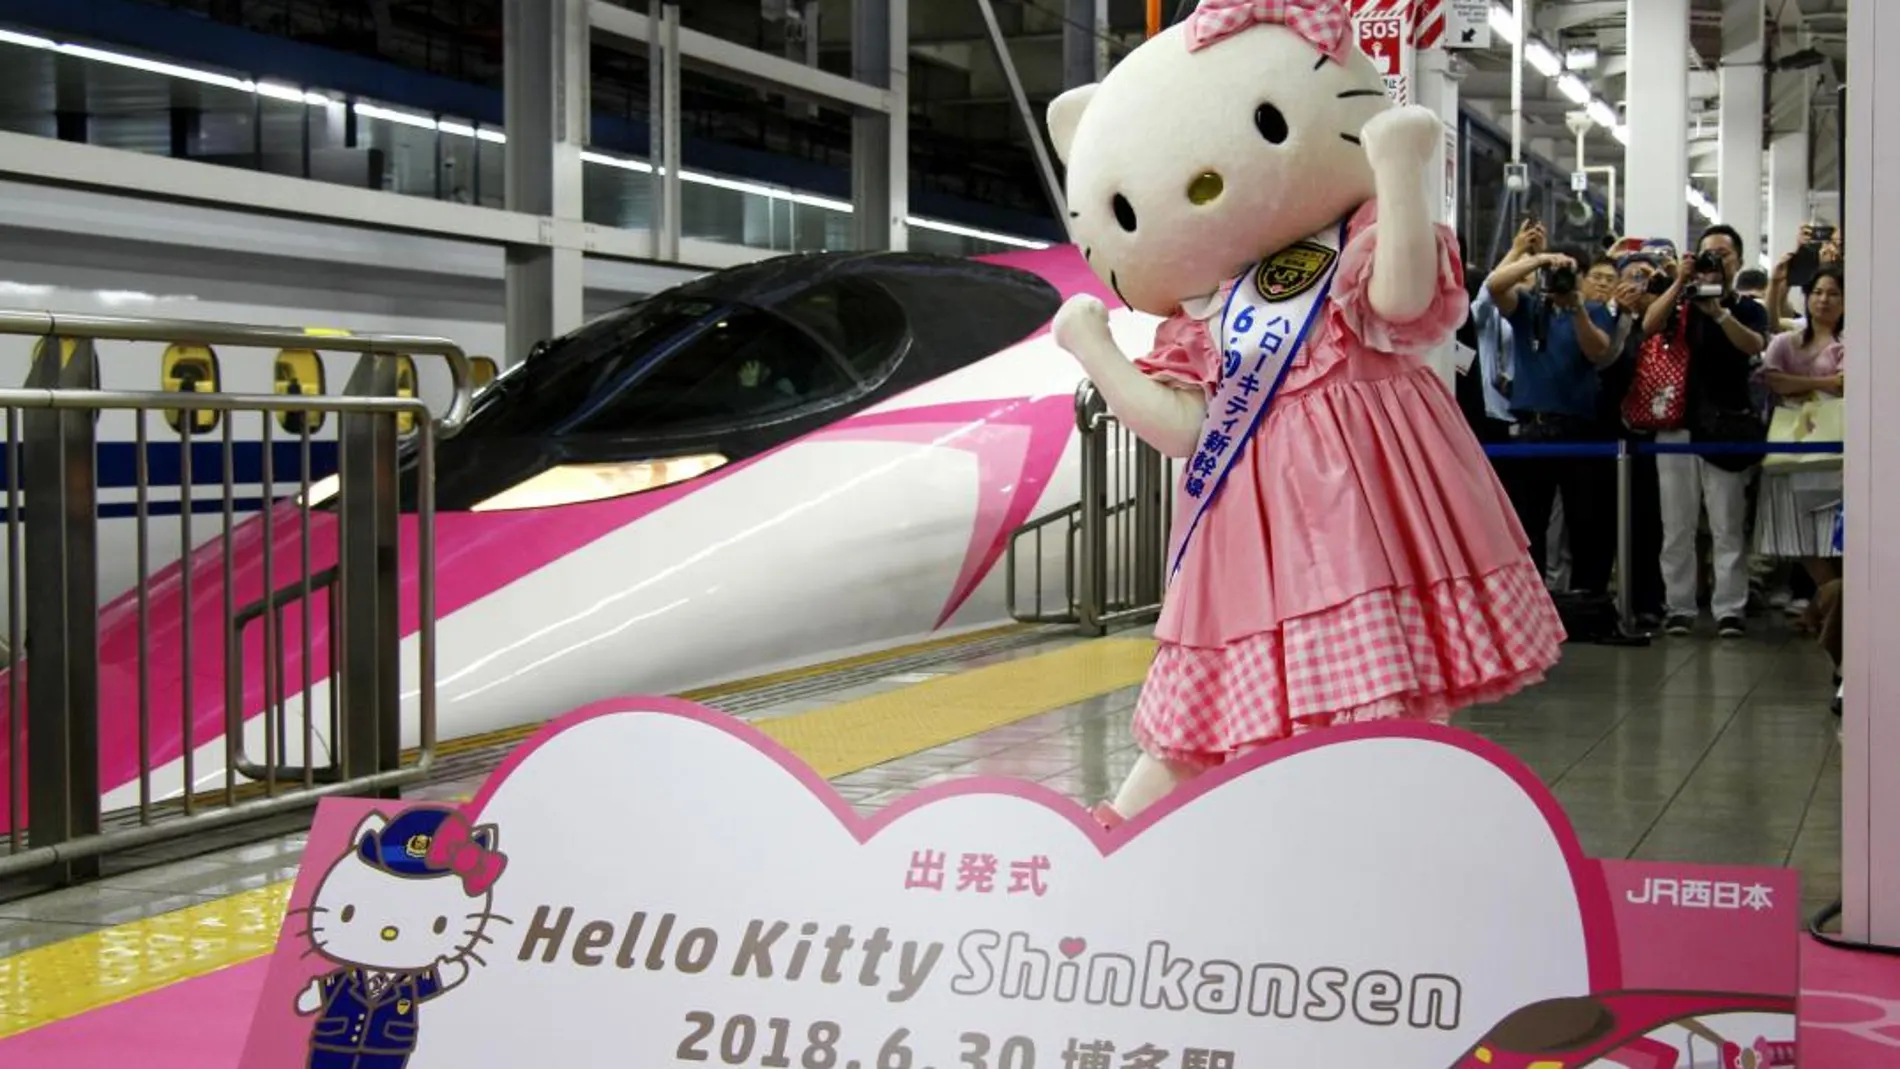 En el tren inaugurado hoy, todo está creado con motivos de la gata Hello Kitty / Ap